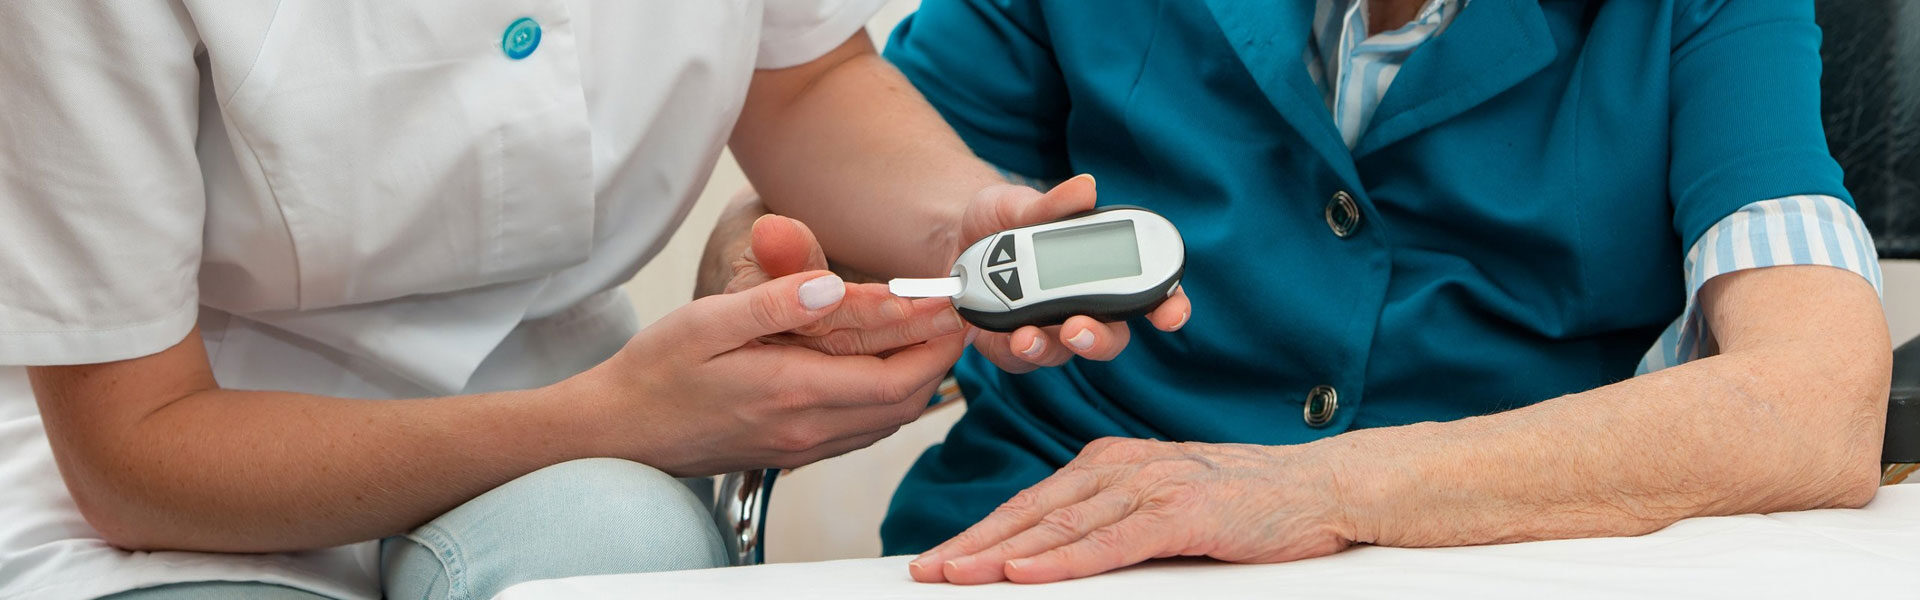 Diabetes Mellitus Treatment in Germantown, MD